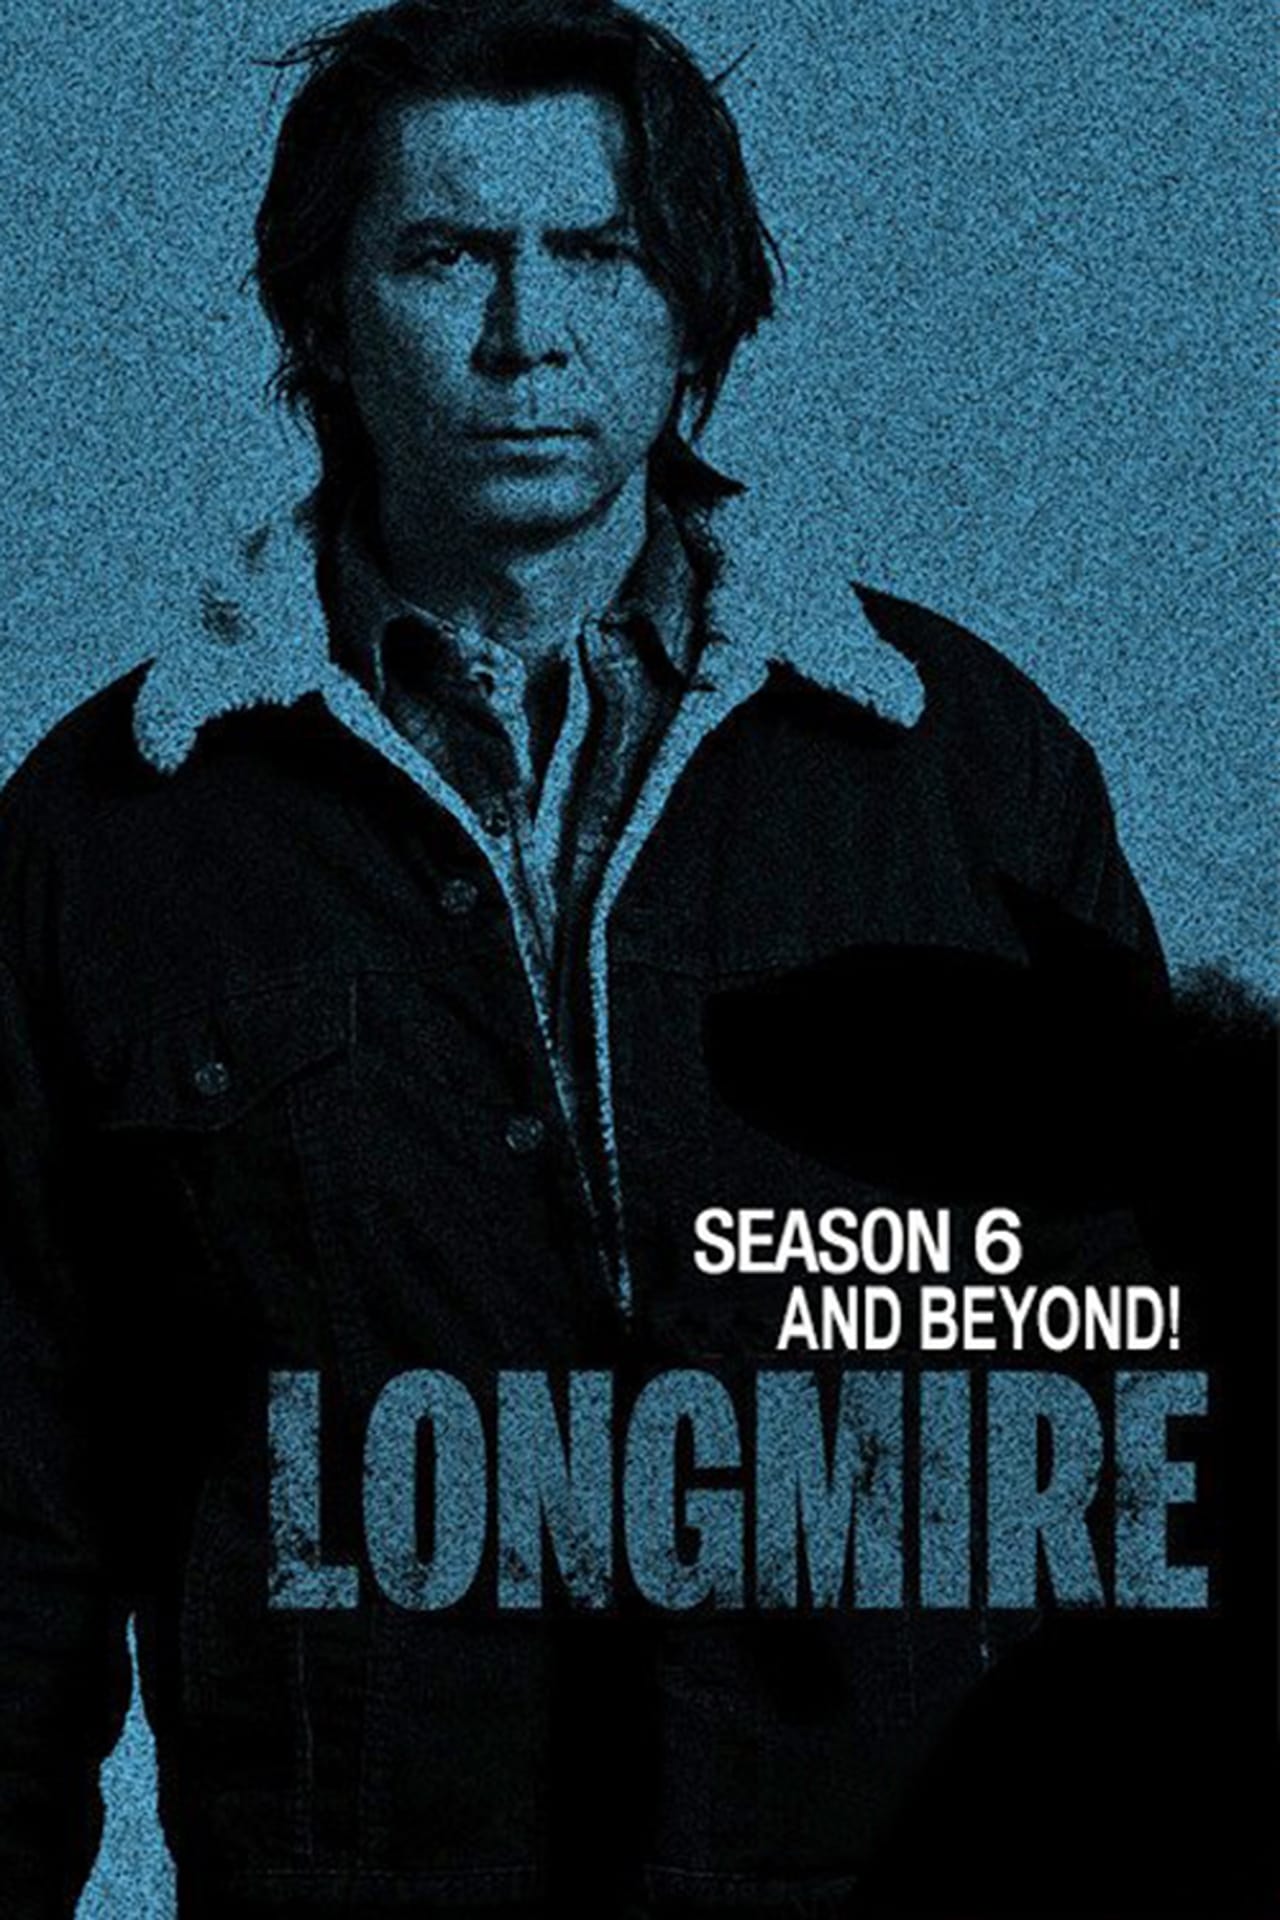 Longmire Season 6